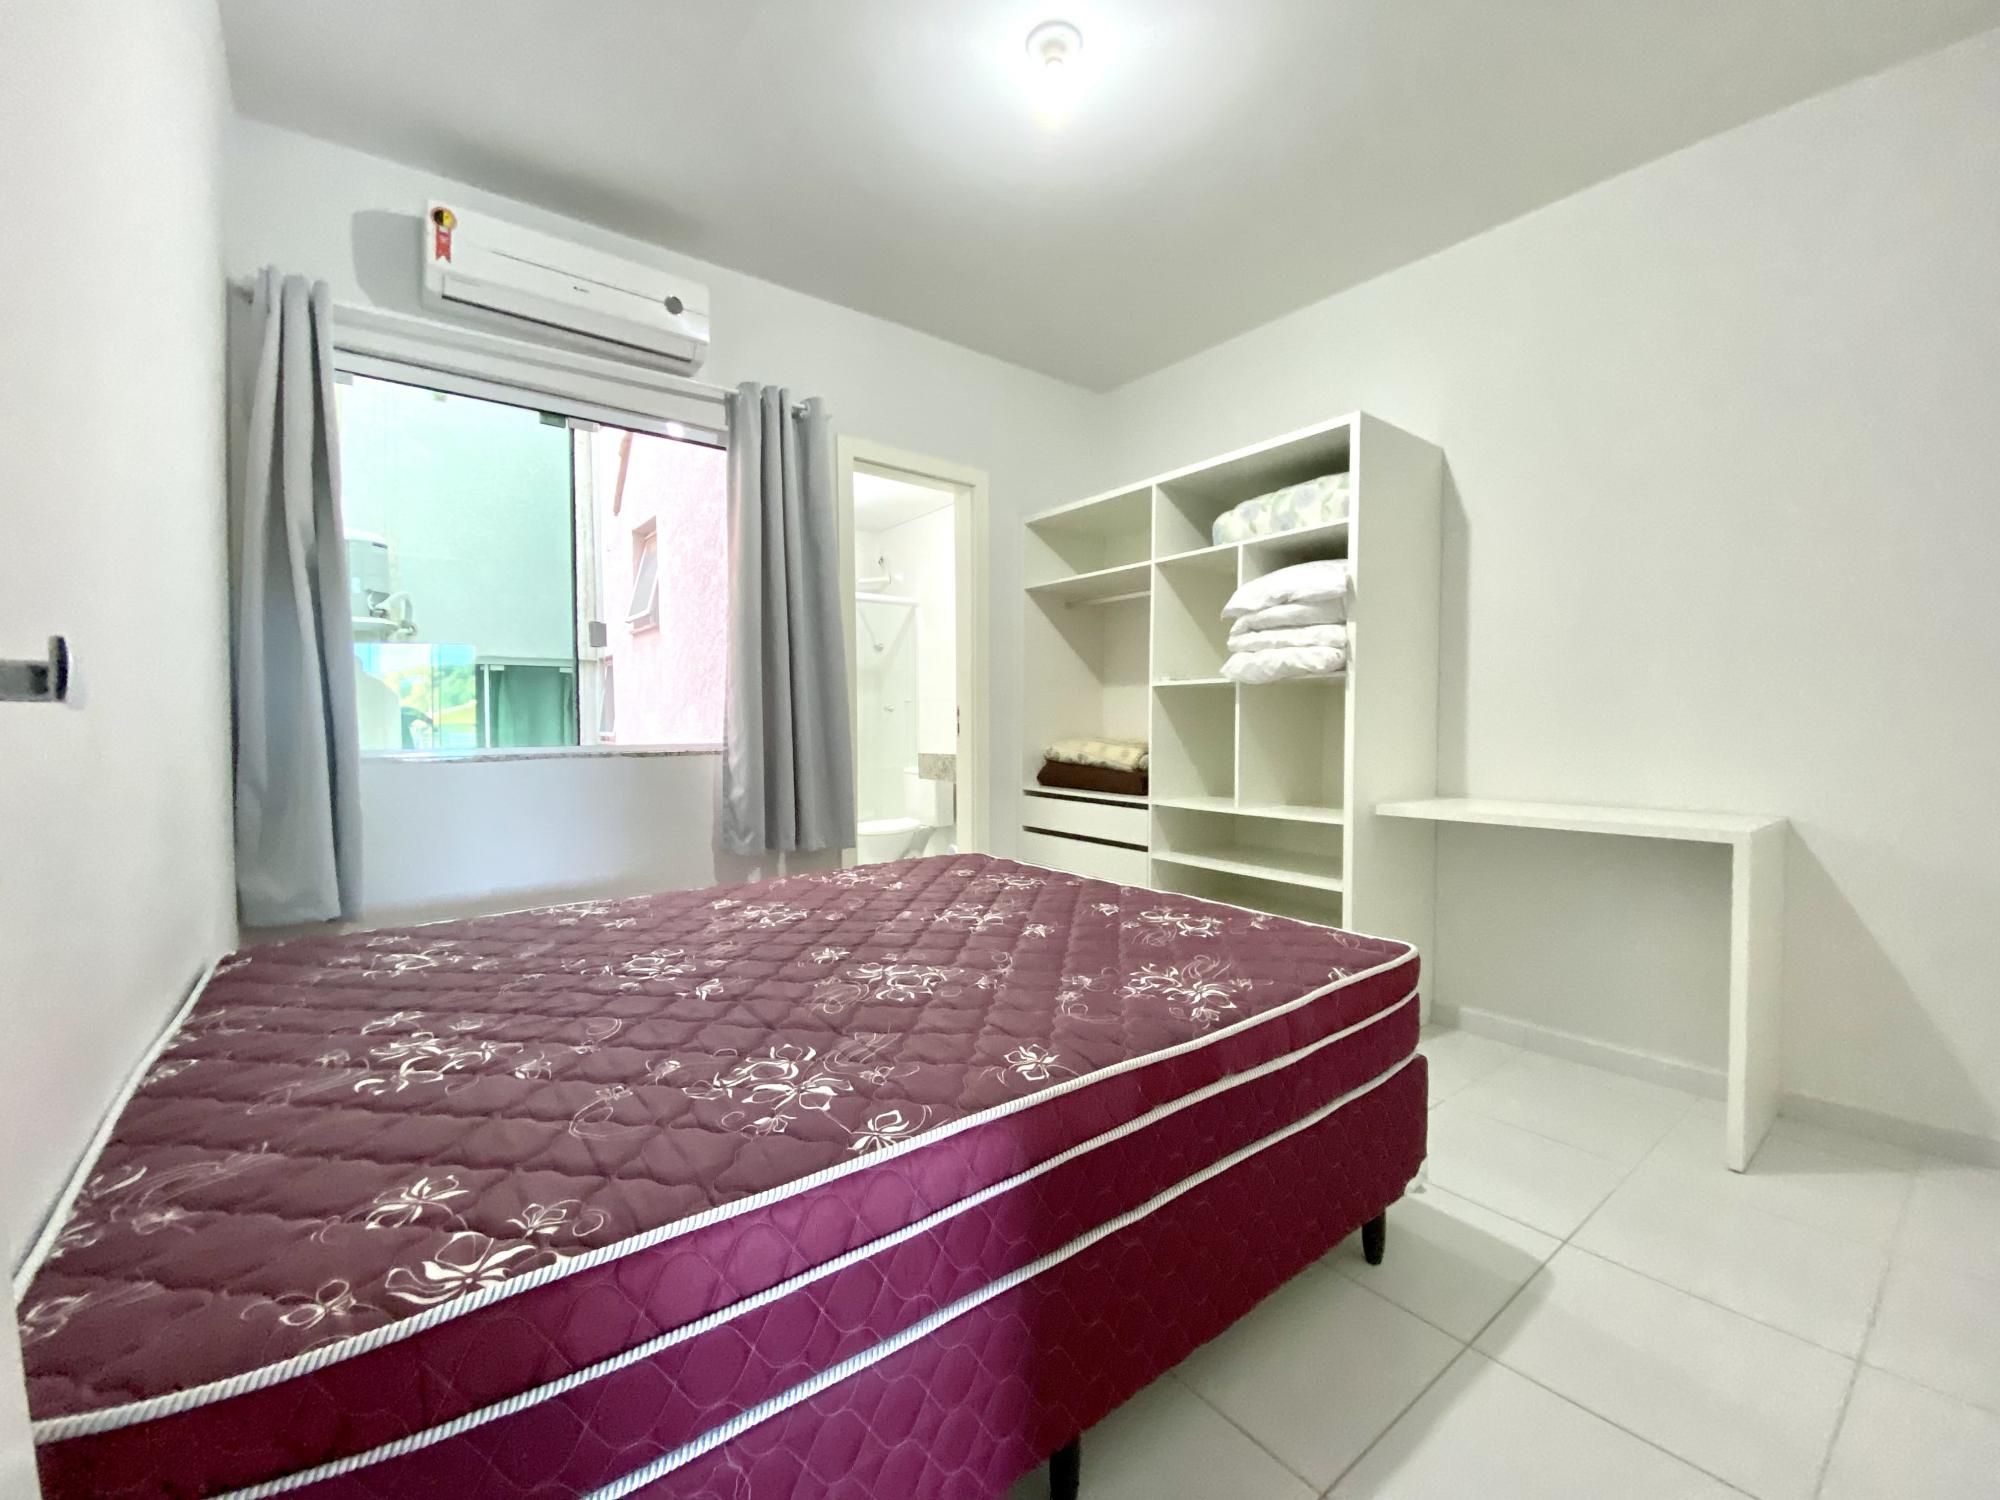 Apartamento com 2 Dormitórios para alugar, 70 m² valor à combinar